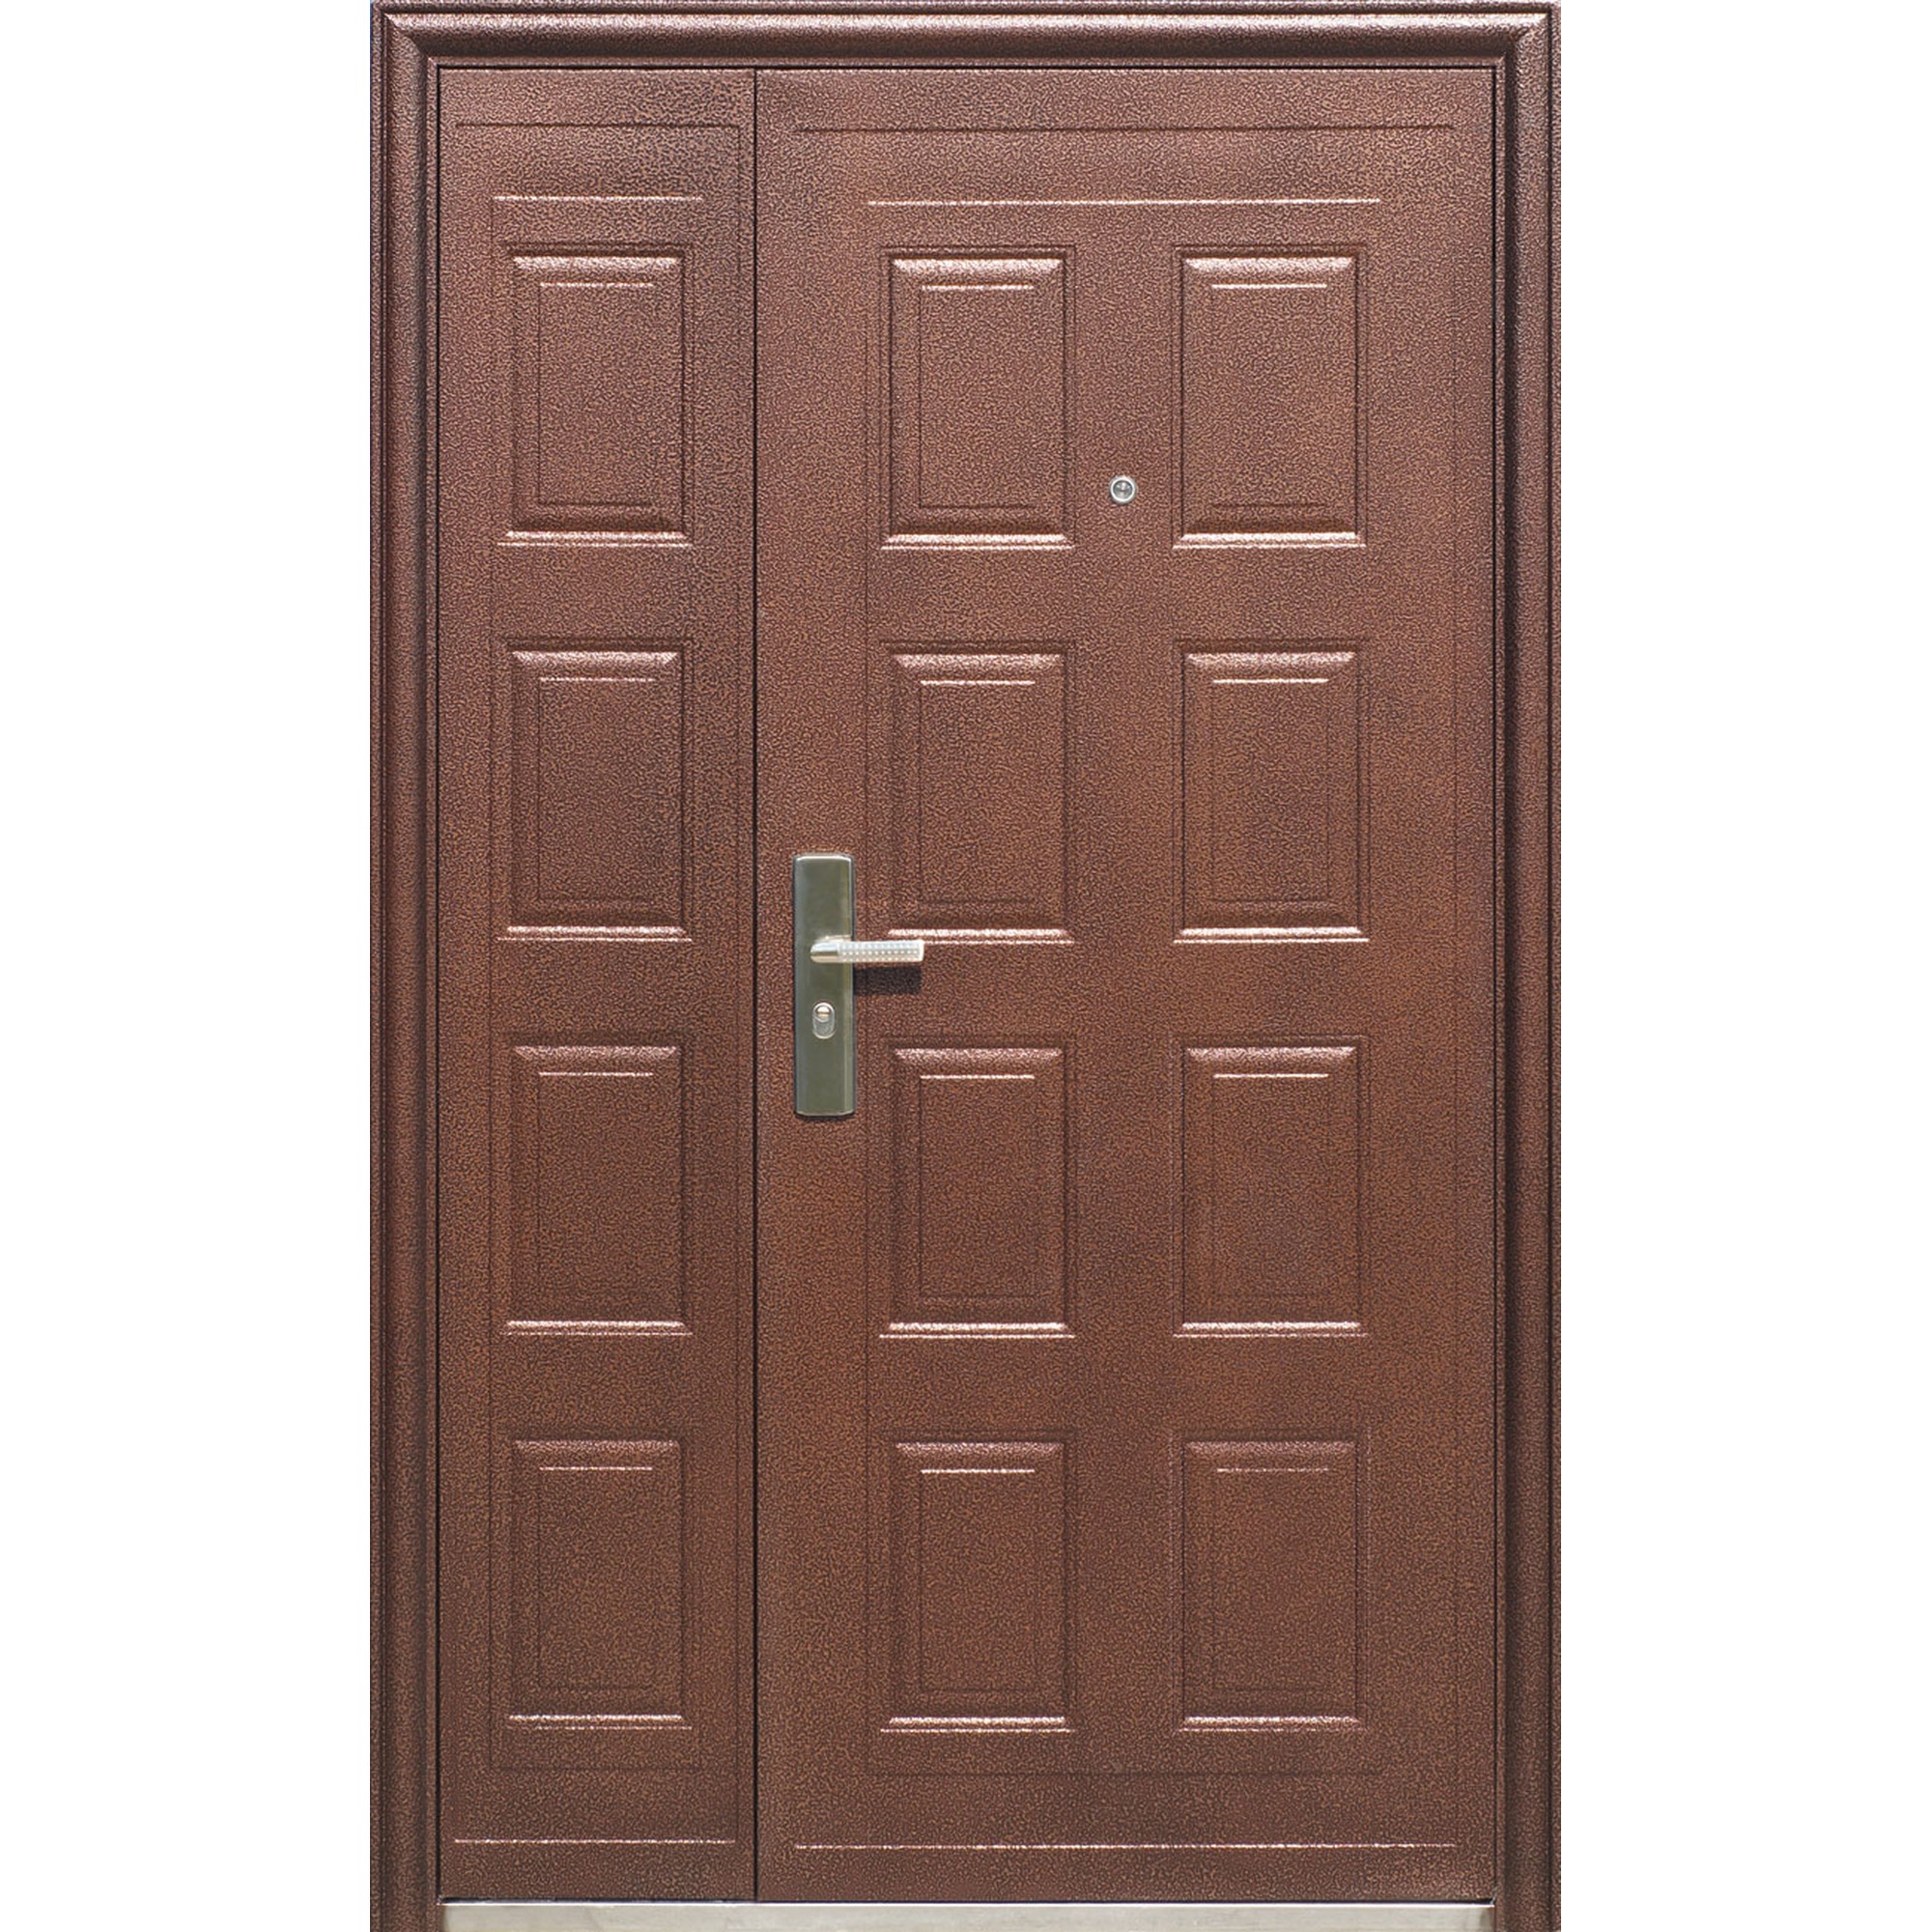 Дверь входная металлическая китайская купить. Дверь входная металлическая Toodoors 801. Kaiser k700 дверь входная. Дверь входная 1200х2200. Дверь входная металлическая 2200х1200.